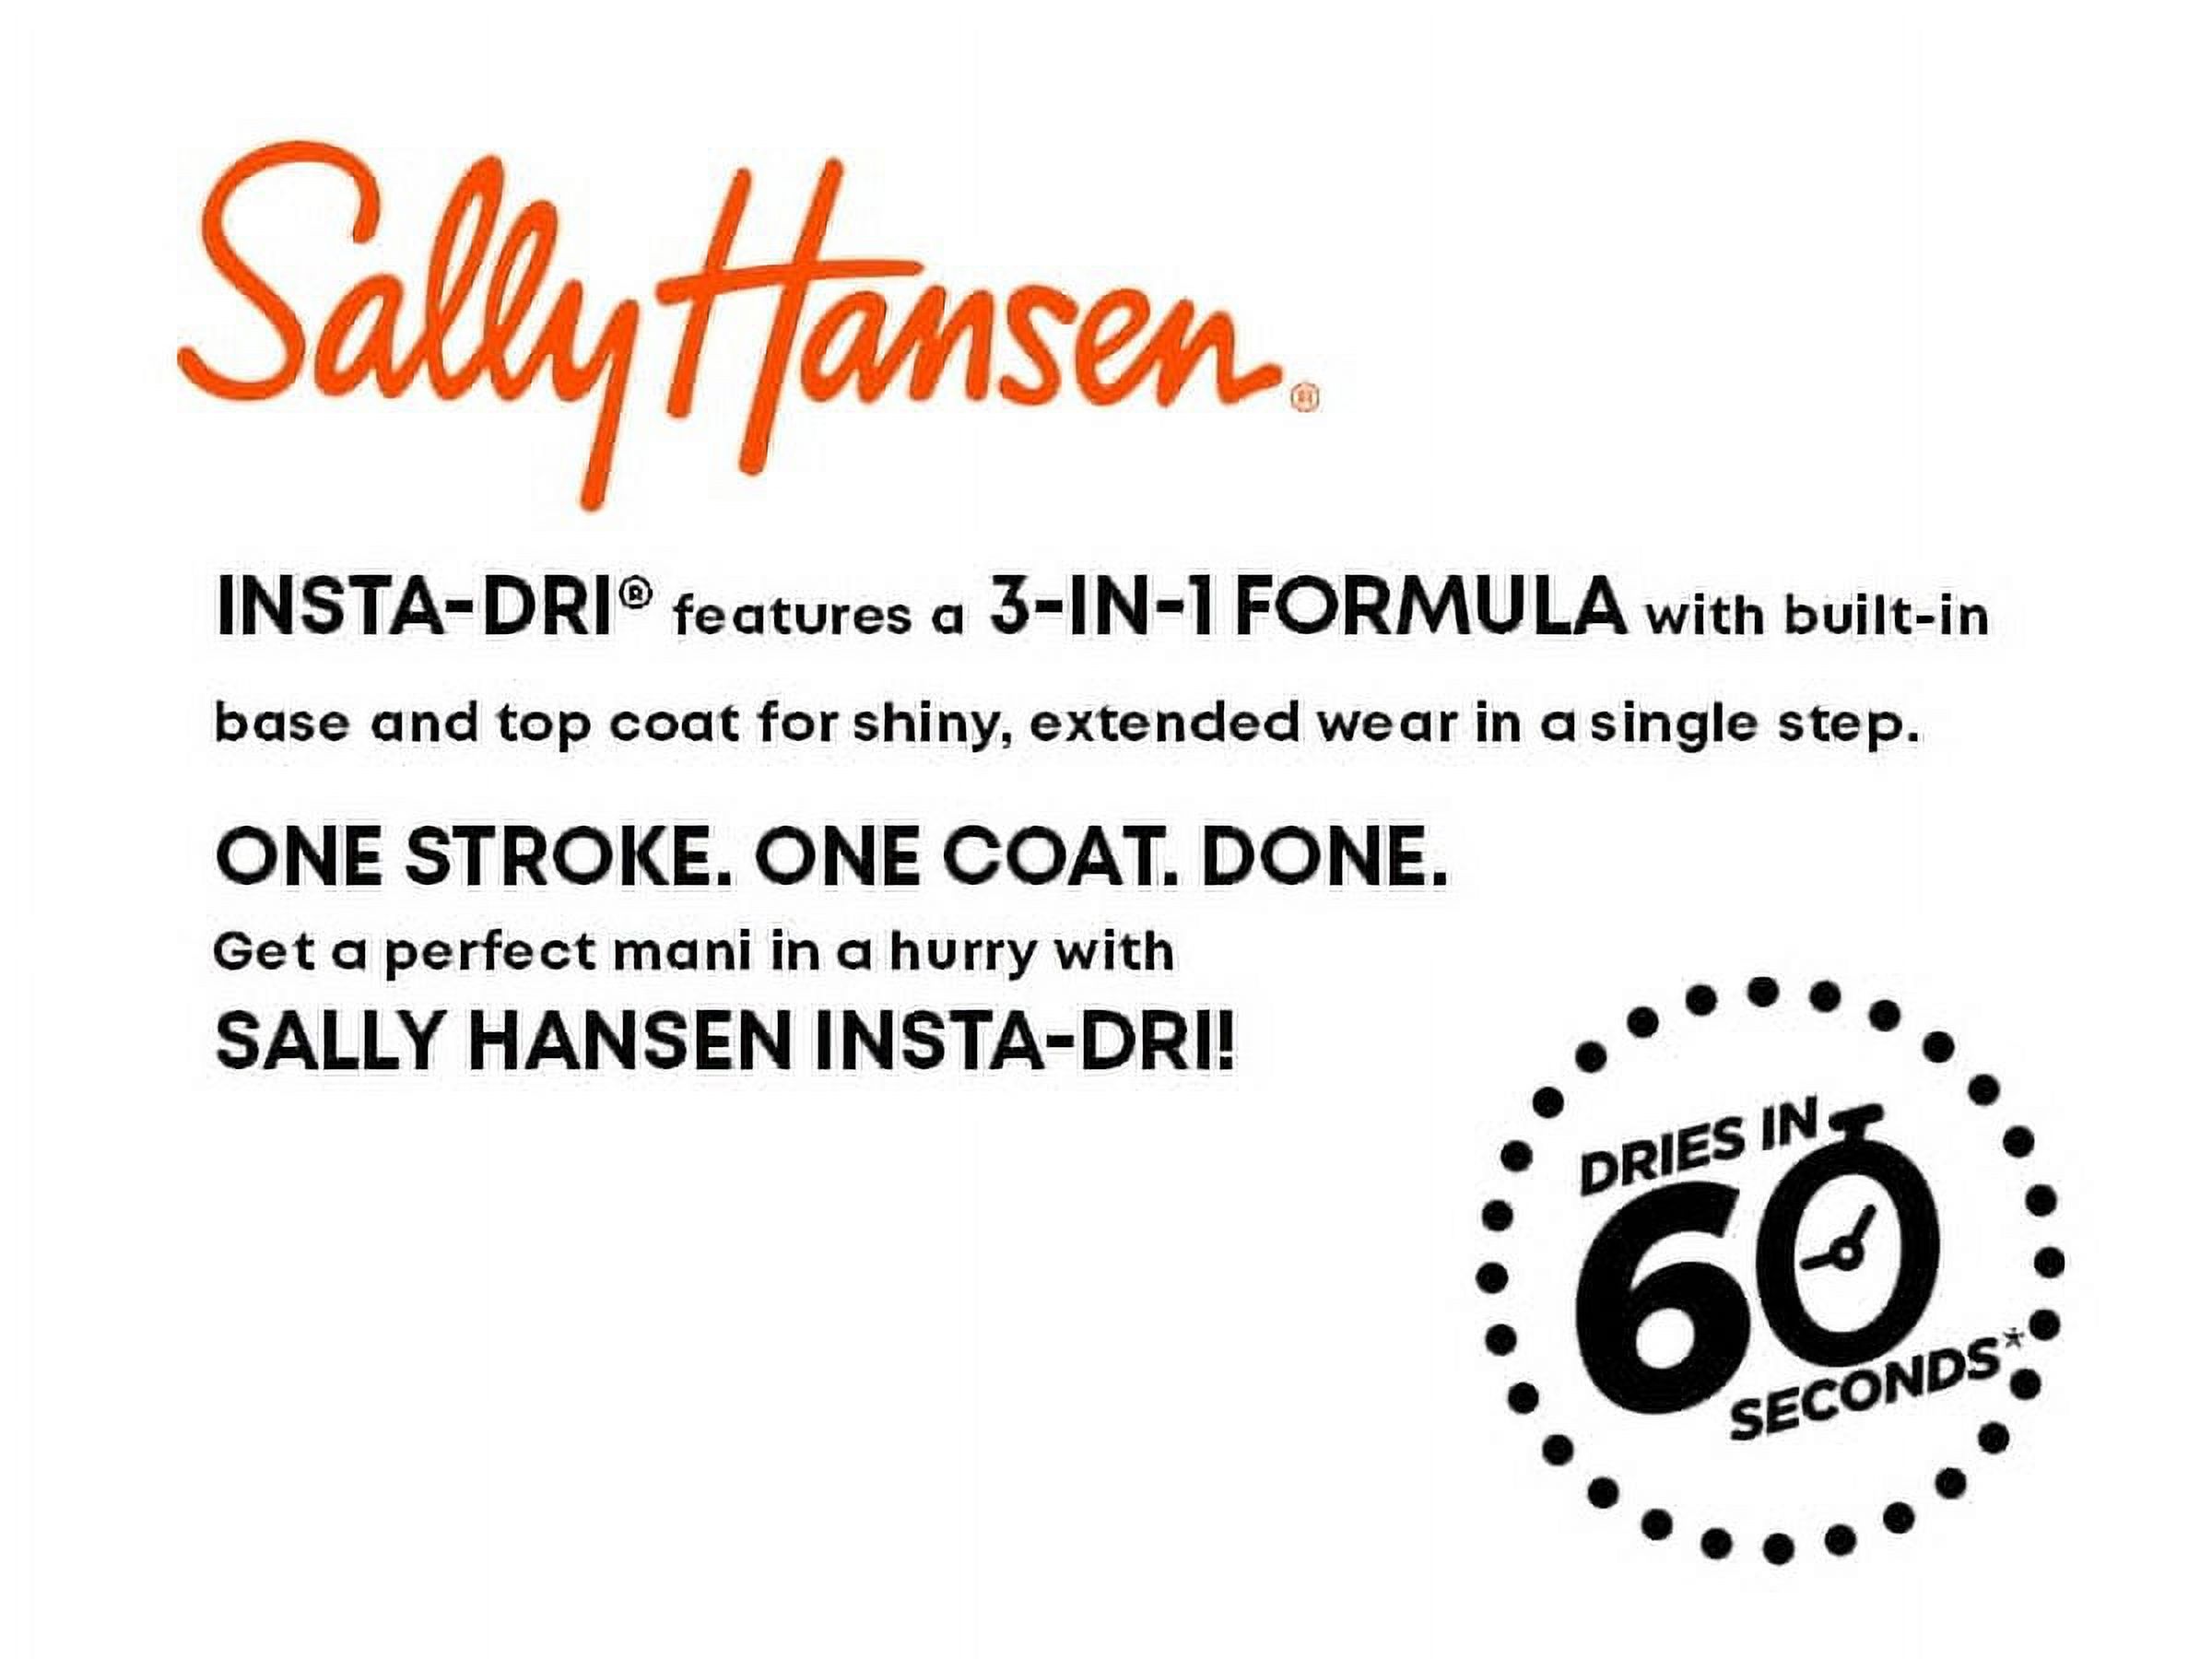 Sally Hansen Insta-Dri Nail Color, Pink Blink, 3-in-1 Formula, Color Nail Polish, 0.31 Oz, Quick Dry Nail Polish, Nail Polish, Top Coat Nails, Full Coverage Formula, One Stroke, One Coat - image 15 of 15